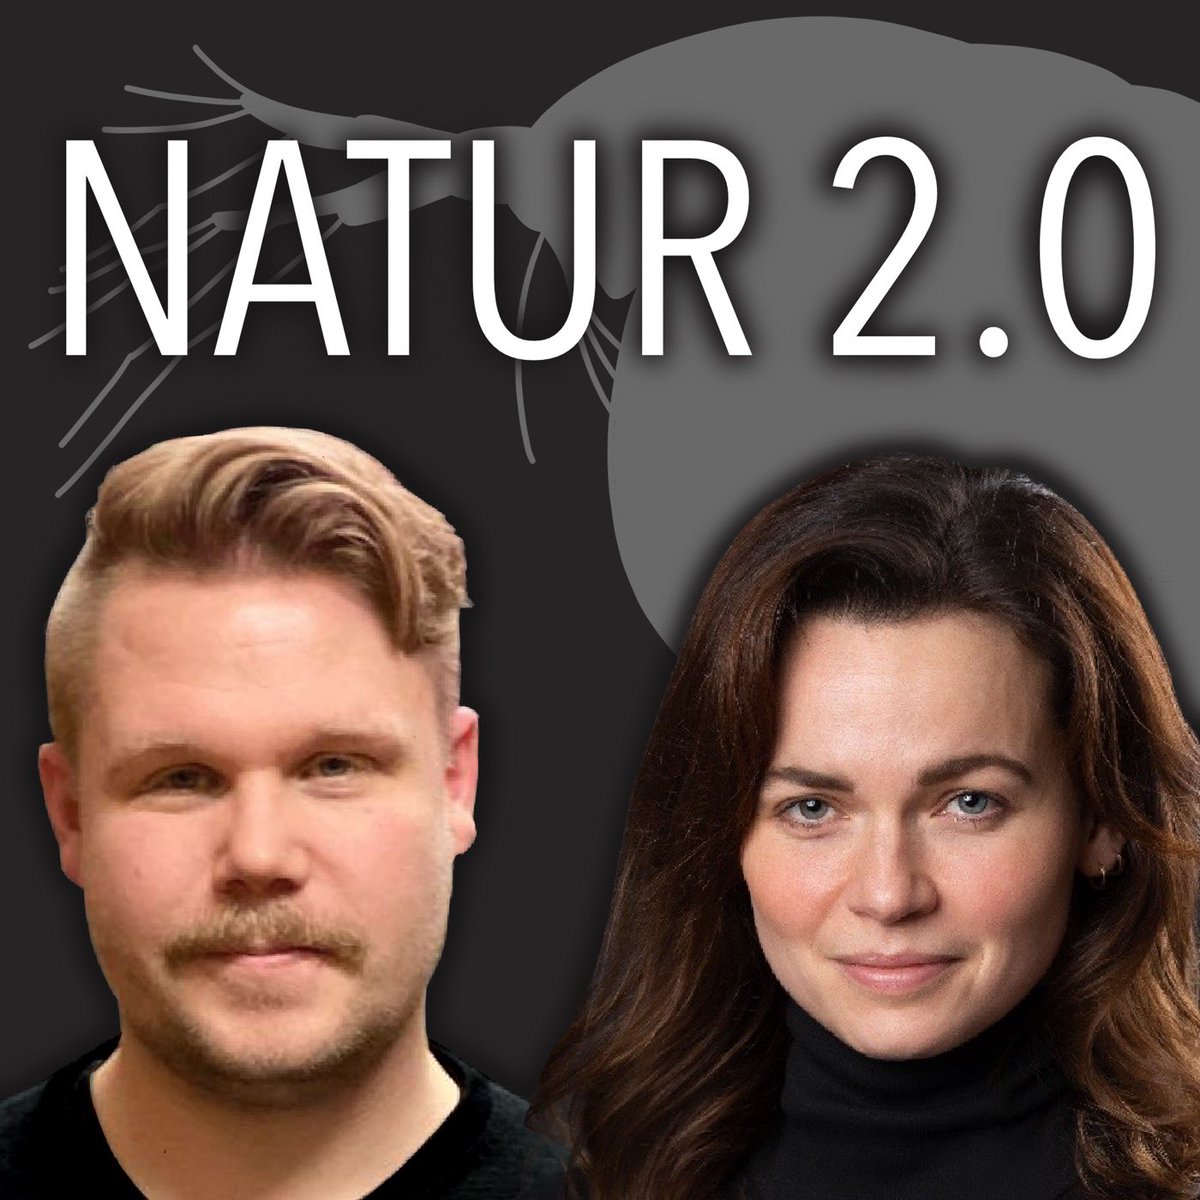 Unser neuer Podcast ist draußen: 

Natur 2.0 - Der Biodiversitäts-Podcast

Mit Gewässerökologin Dr. @JanaIsanta und mir, einem Insektenforscher. Alle 14 Tage geht es um biologische Vielfalt und die Wissenschaft dahinter.

natur-20-podcast.podigee.io/1-neue-episode